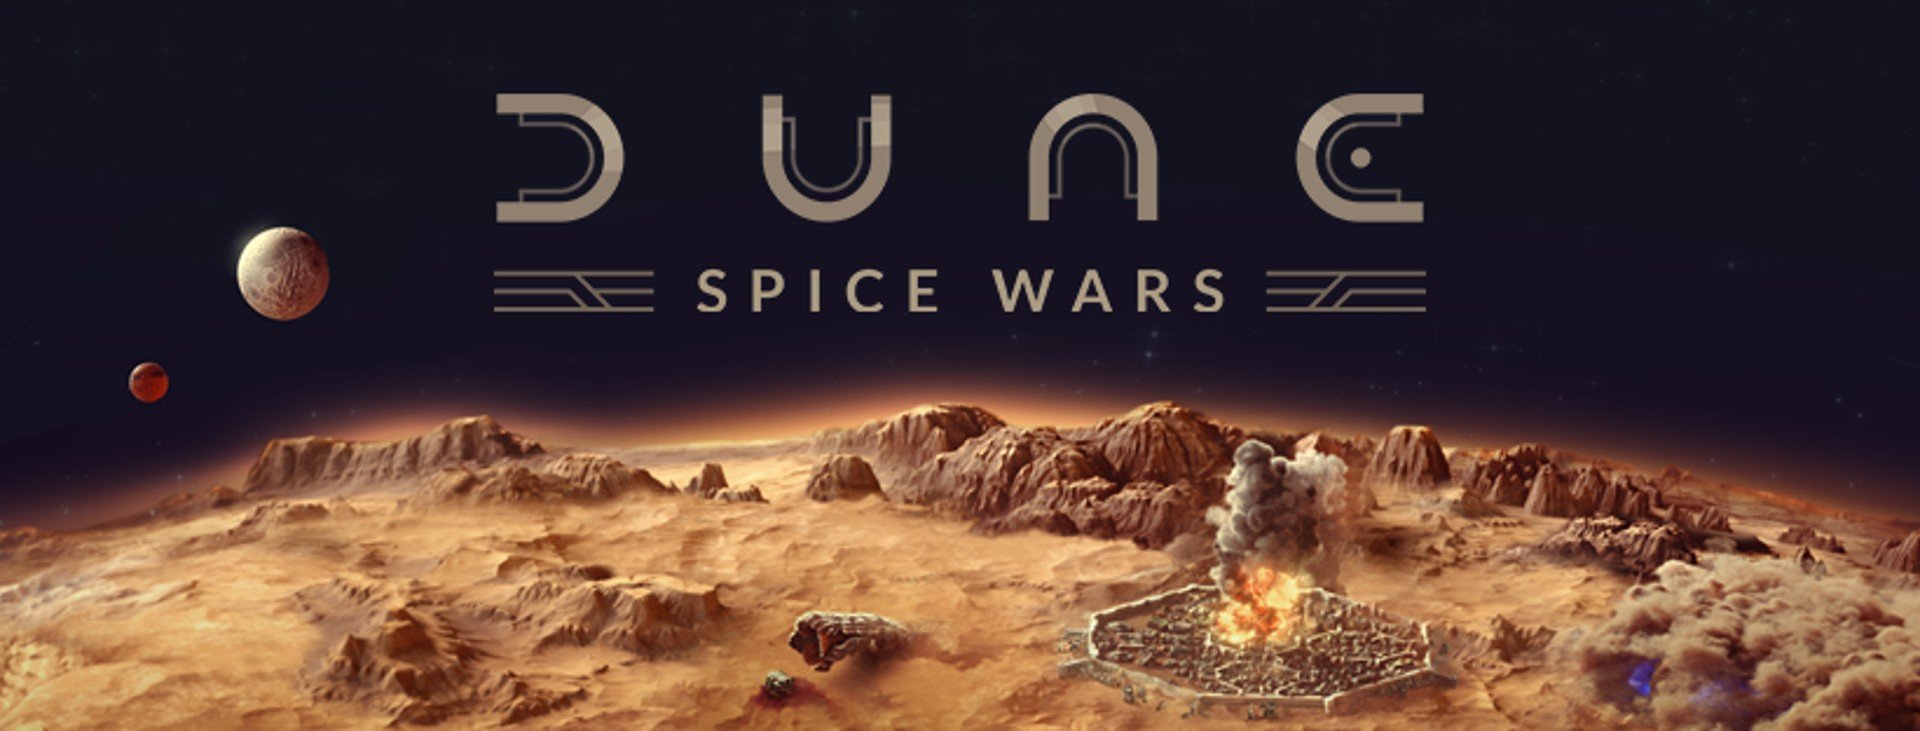 ตัวอย่างการเล่น Dune Spice Wars ผสมผสานแนวเกม 4X กับ RTS เข้าด้วยกัน